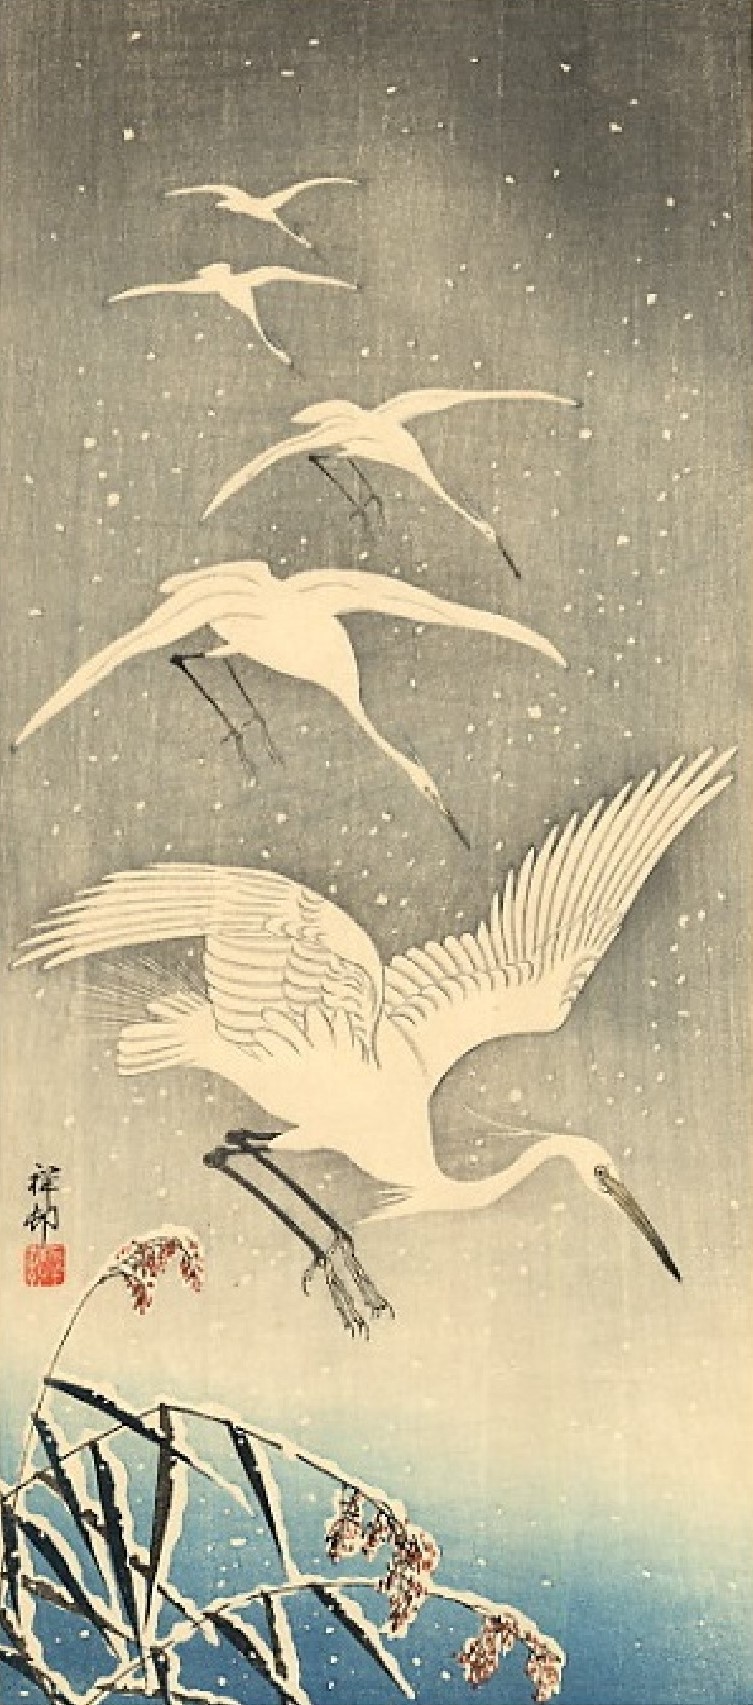 Five egrets descending in snow